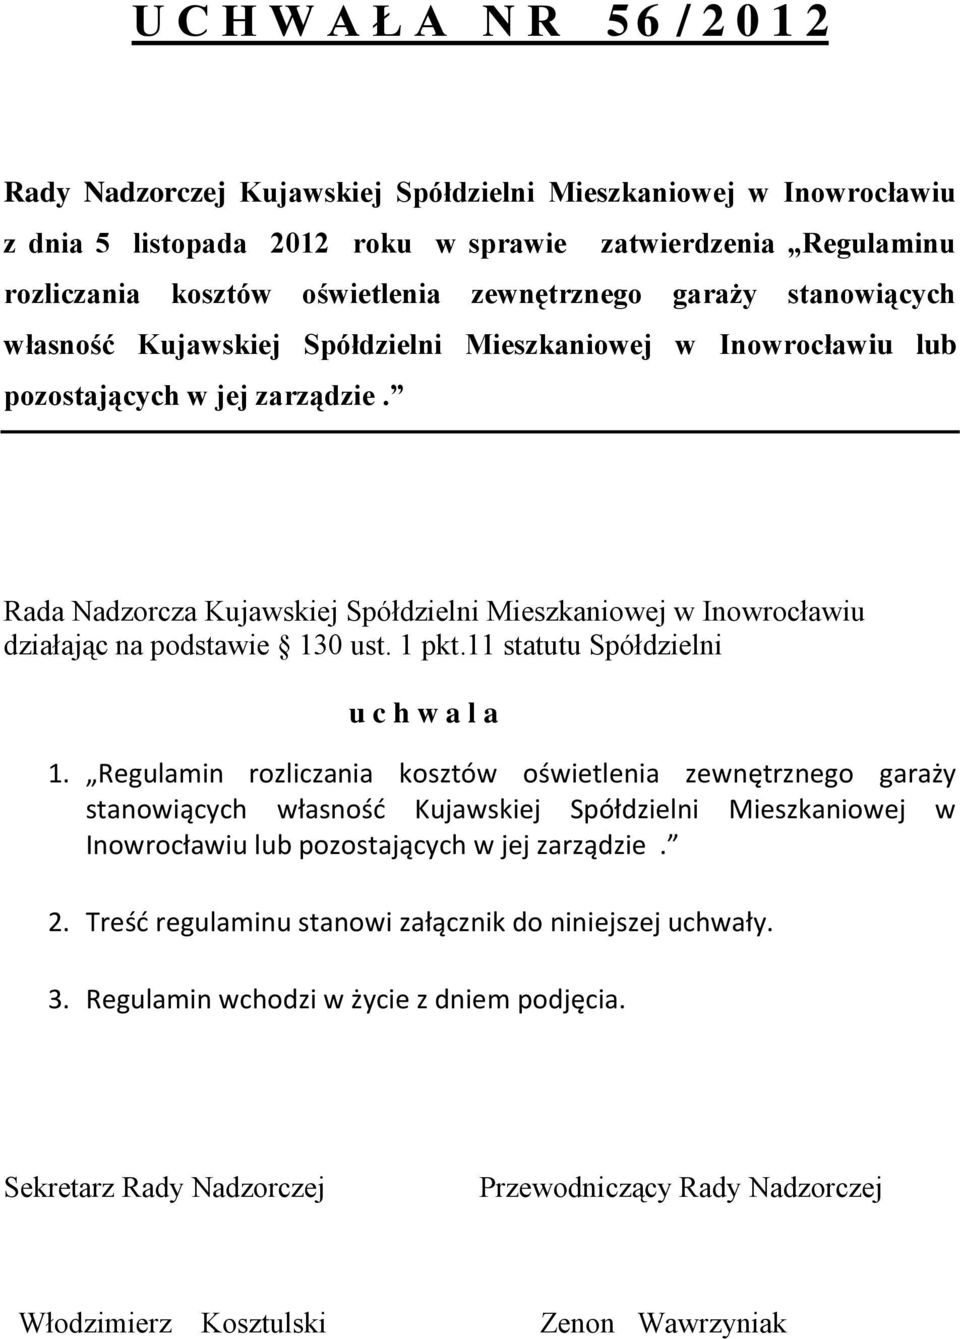 Rada Nadzorcza Kujawskiej Spółdzielni Mieszkaniowej w Inowrocławiu działając na podstawie 130 ust. 1 pkt.11 statutu Spółdzielni u c h w a l a 1. Regulamin rozliczania kosztów oświetlenia  2.